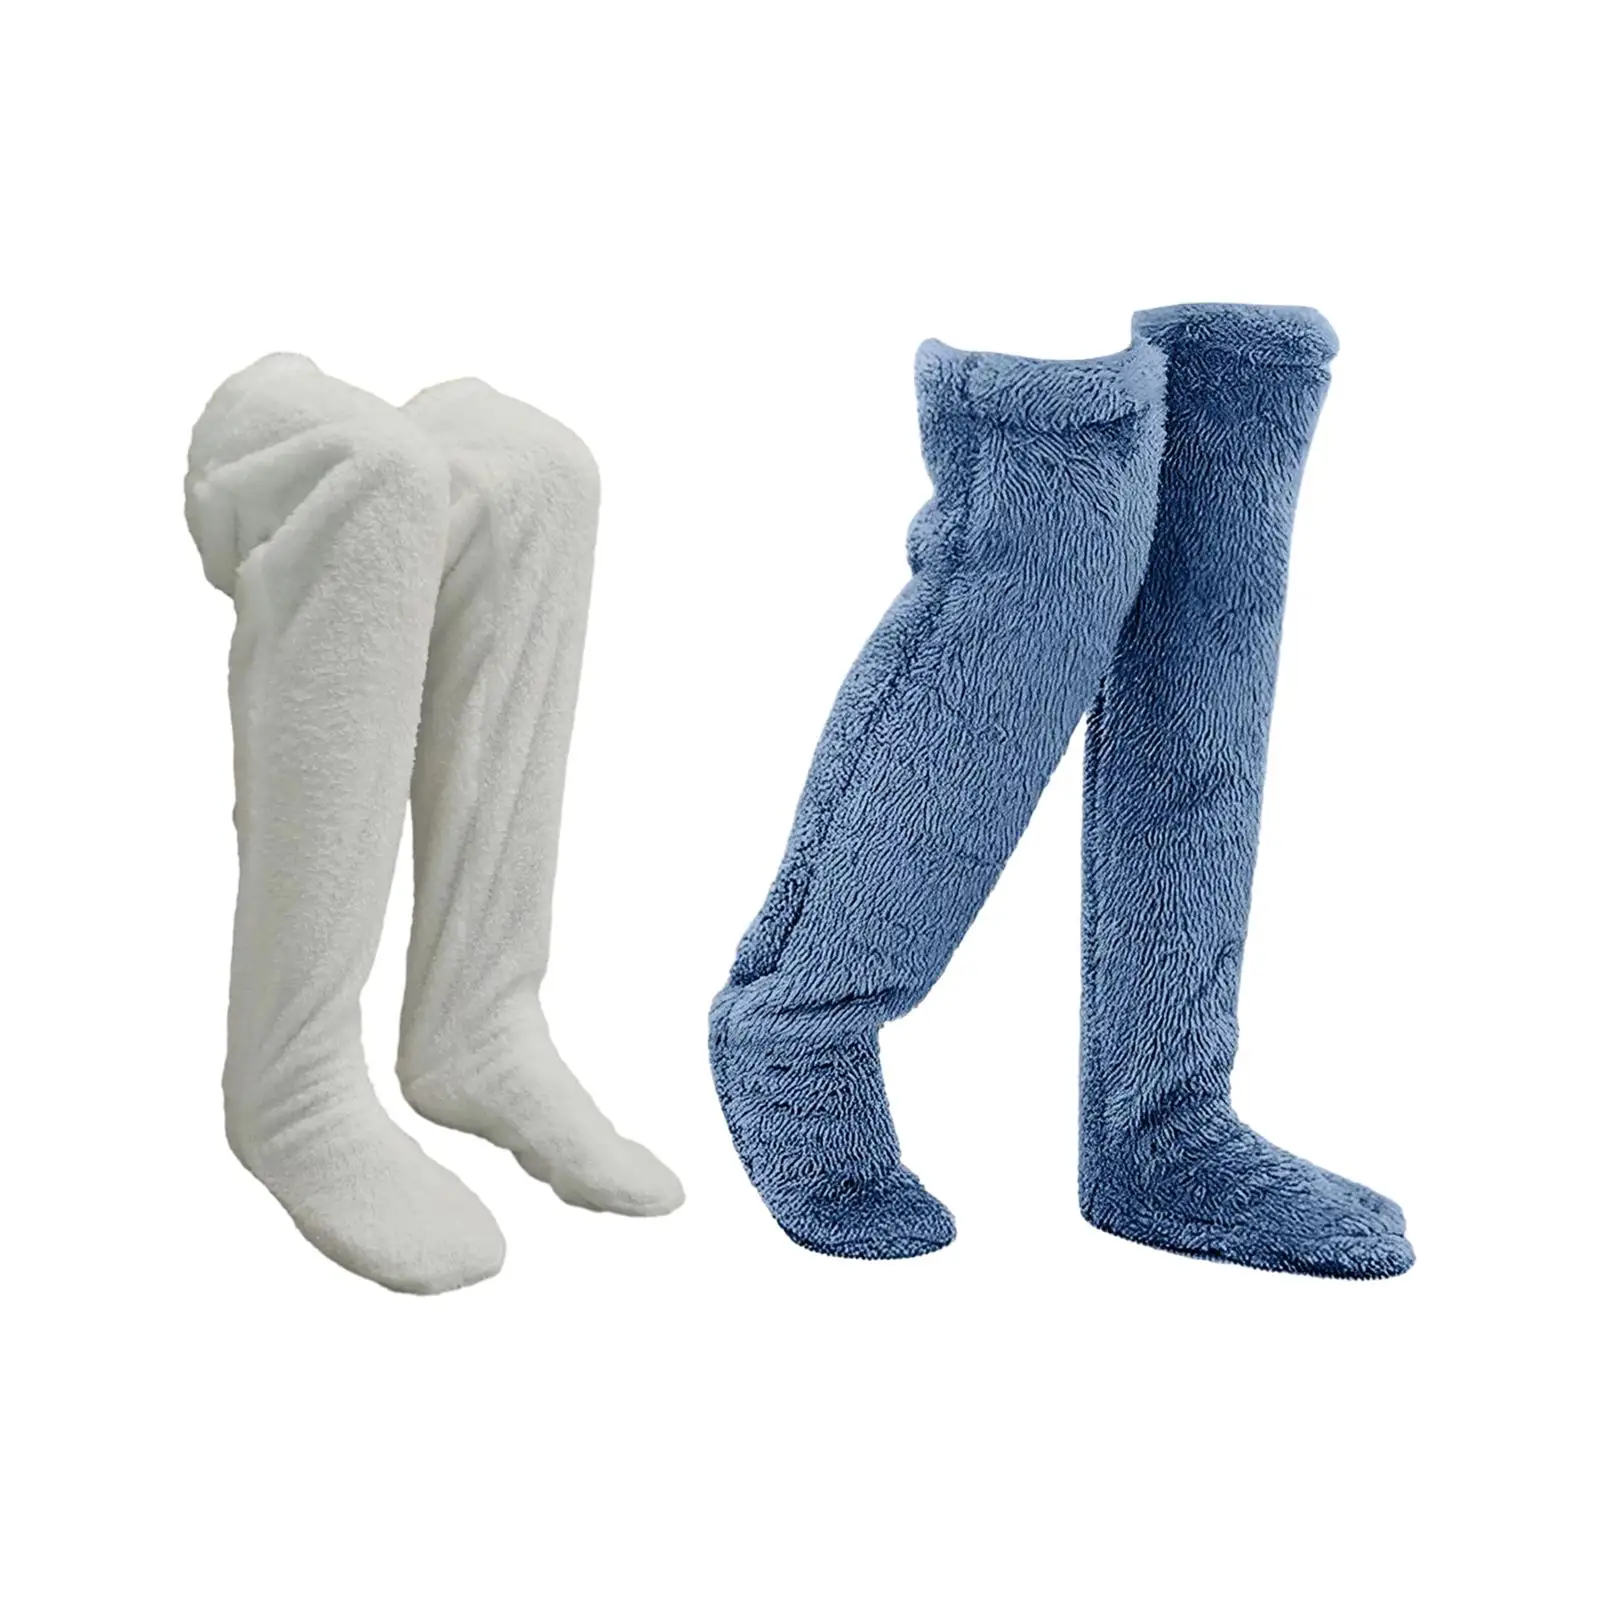 Plush Leg Warmers Thigh High Socks Winter Sleeping Socks Costume Slipper Stockings over Knee High Socks for Bedroom Women Men